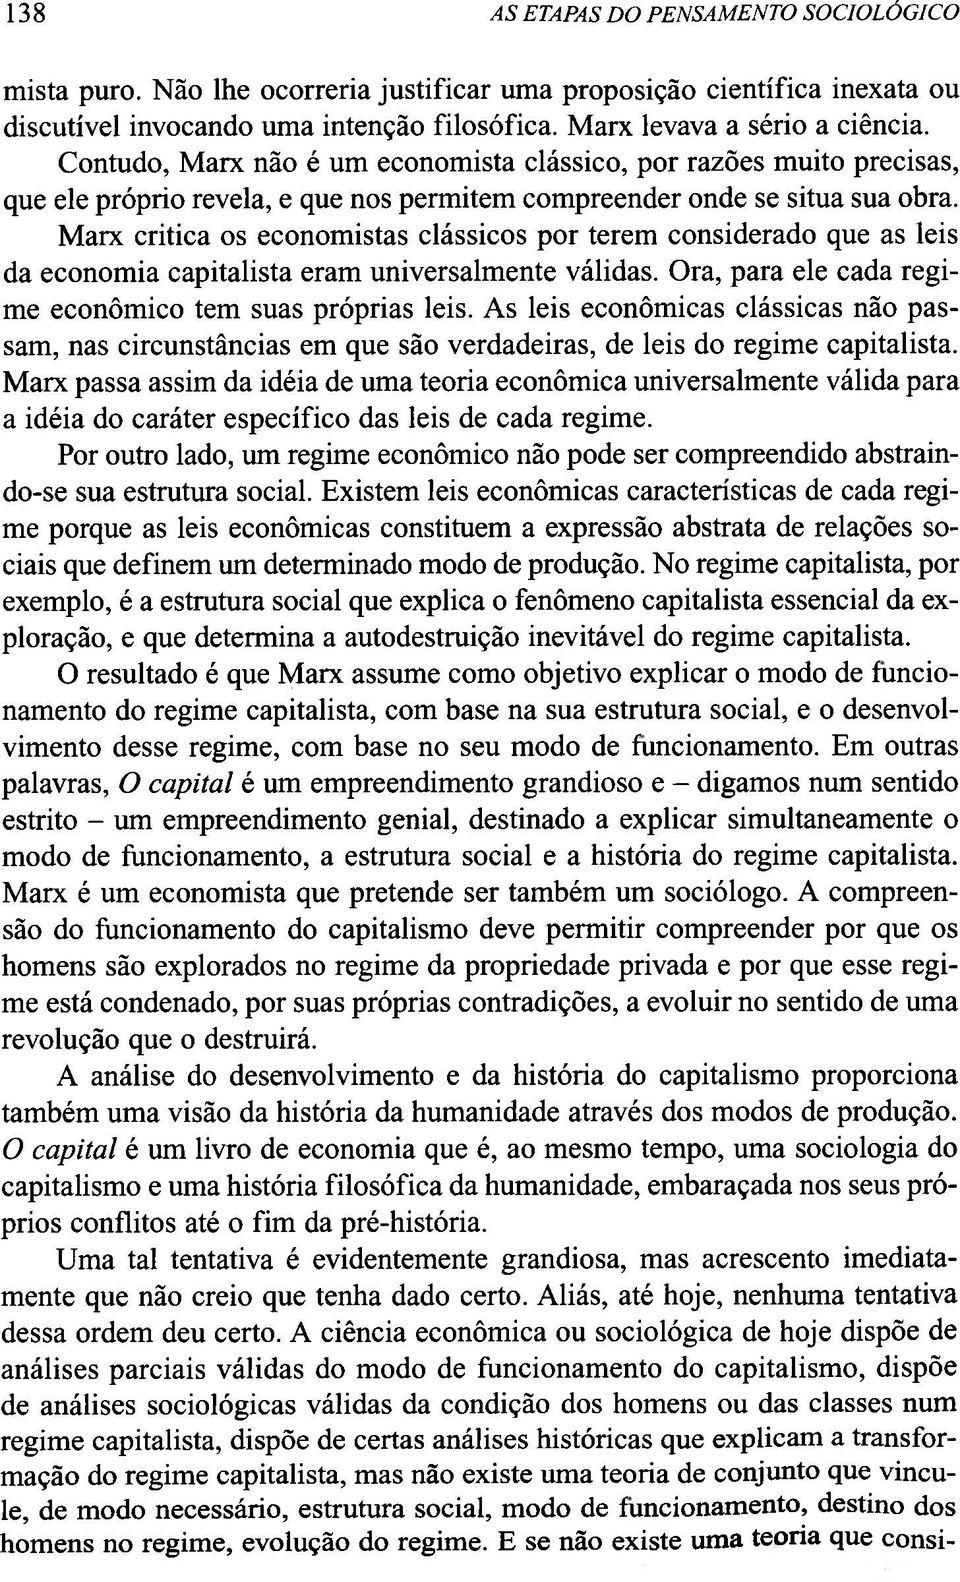 Marx critica os economistas clássicos por terem considerado que as leis da economia capitalista eram universalmente válidas. Ora, para ele cada regime econômico tem suas próprias leis.